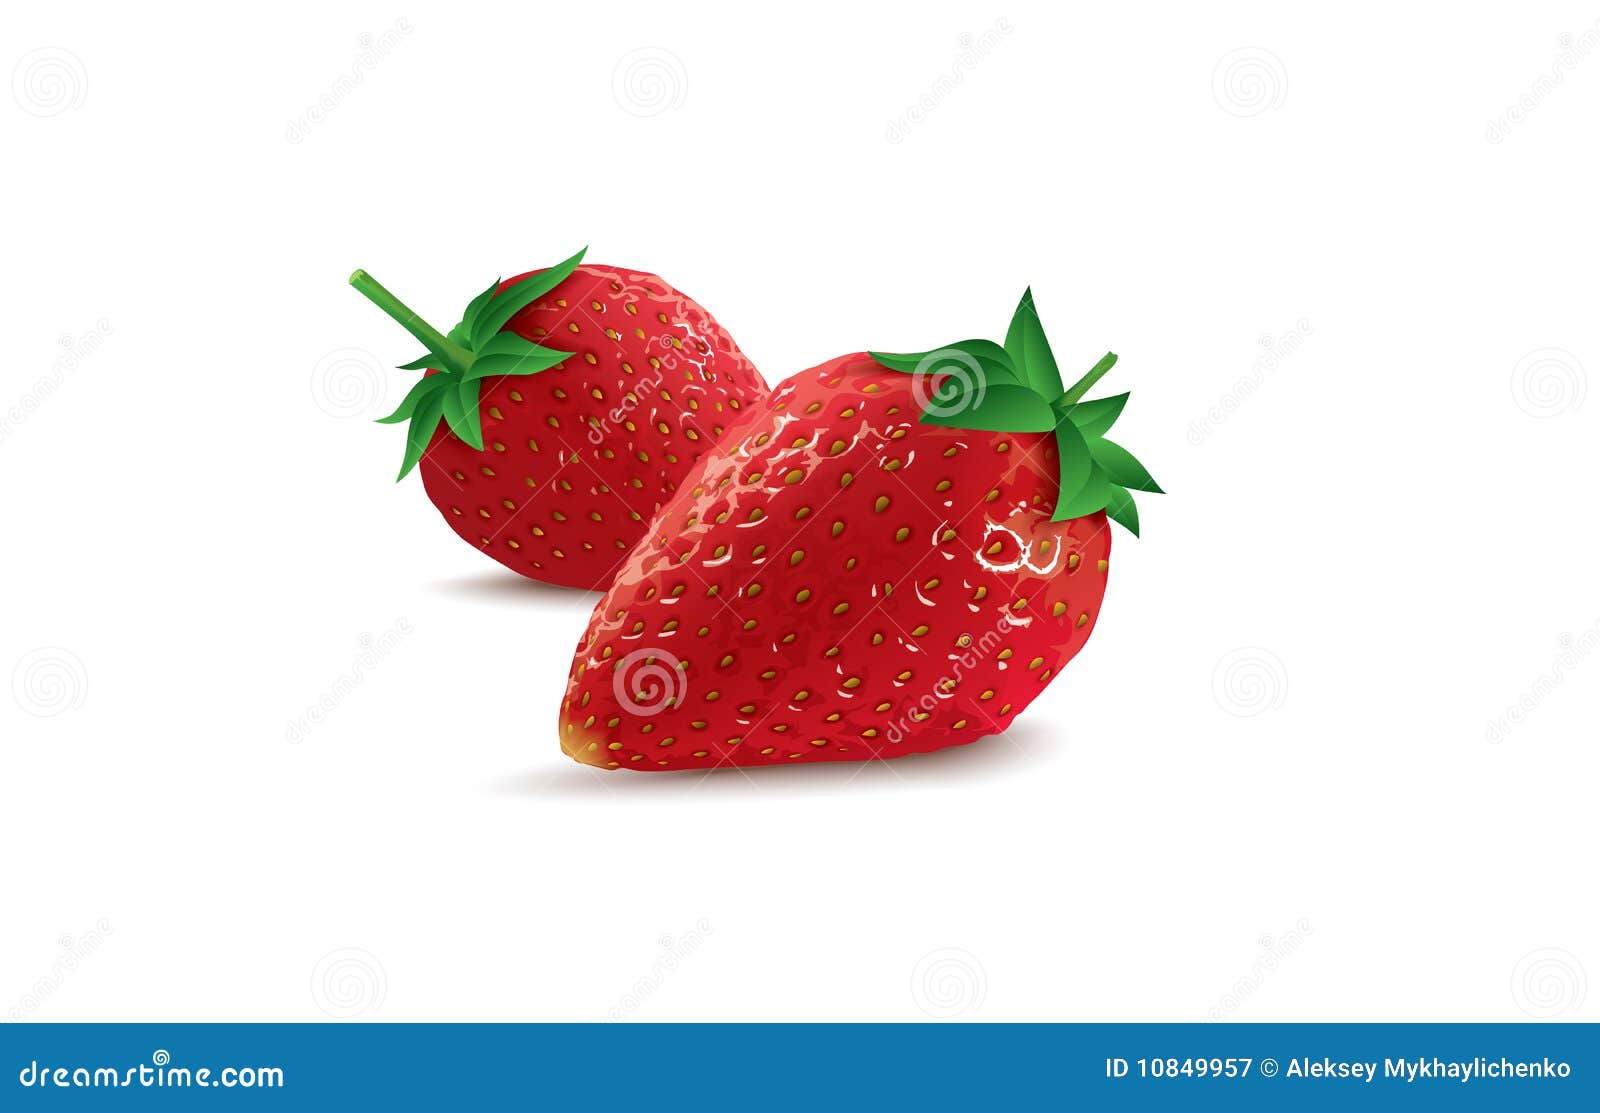   strawberries